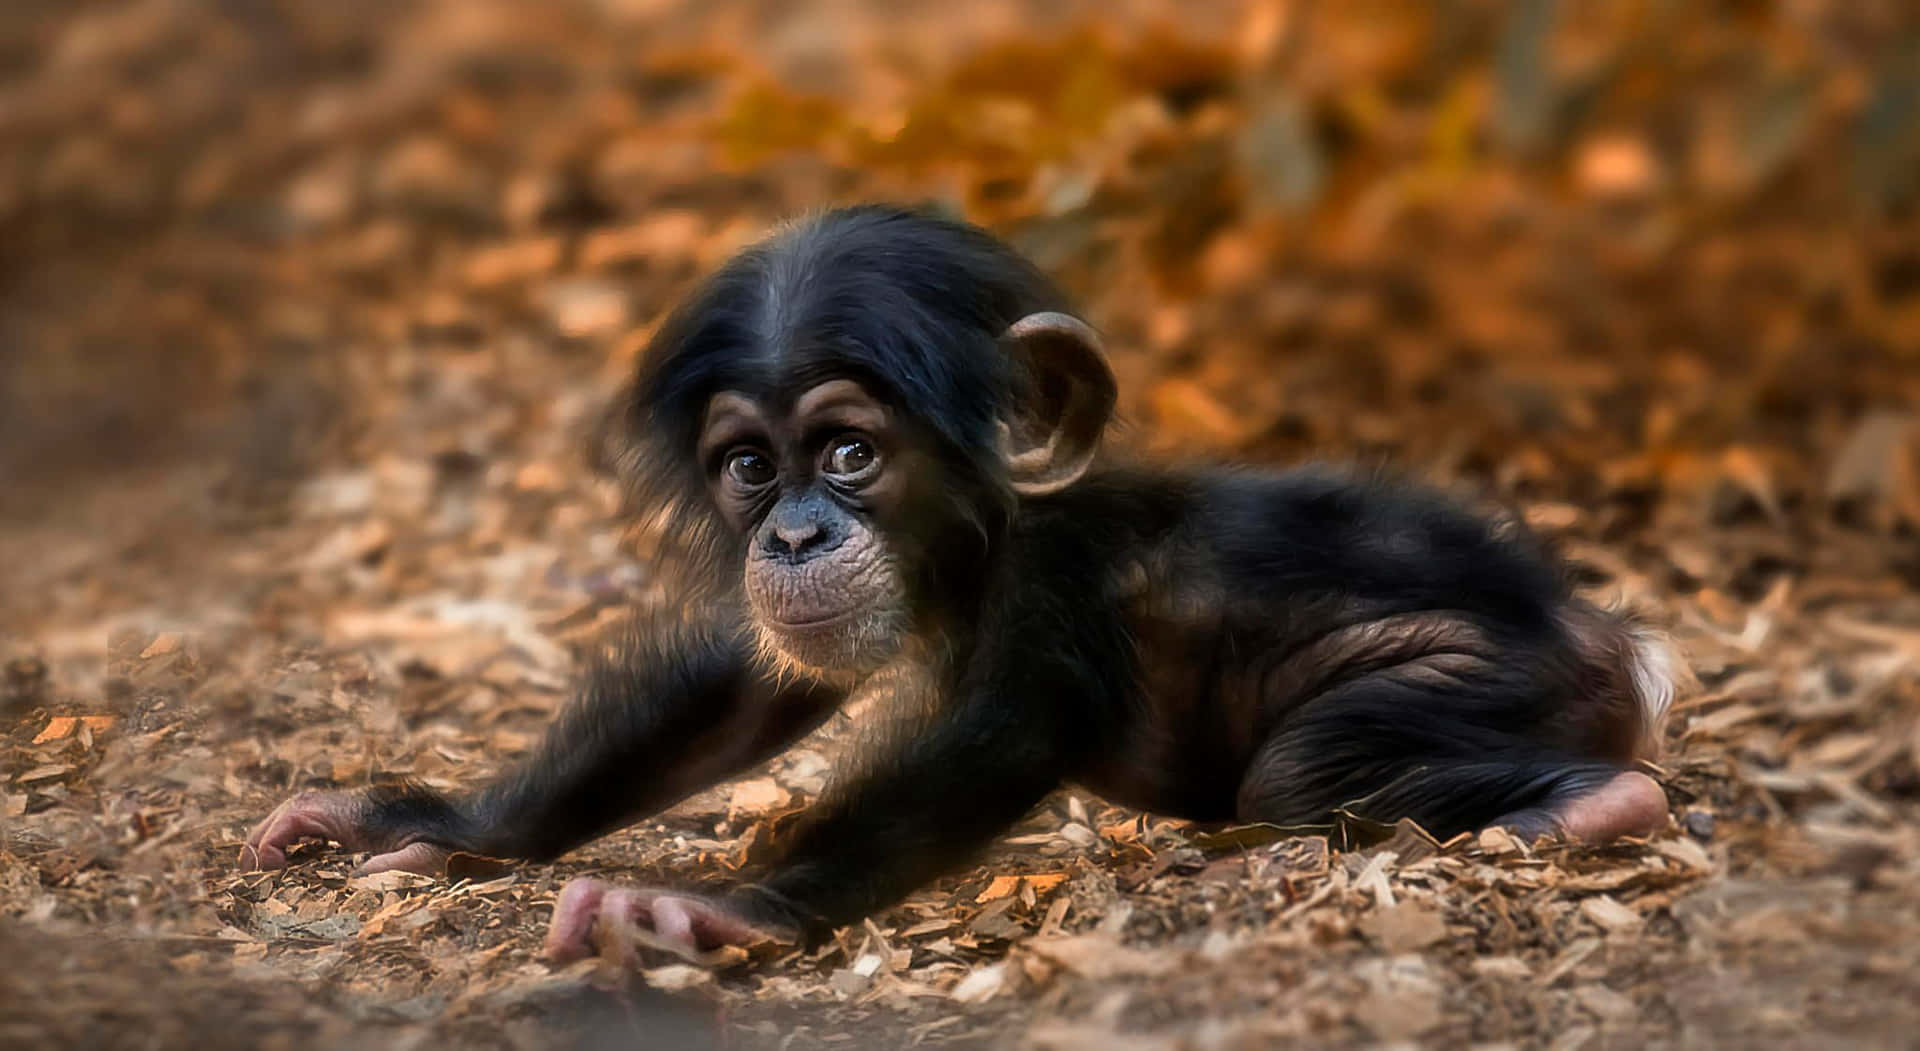 Einenahaufnahme Eines Schimpansen In Seinem Natürlichen Lebensraum.